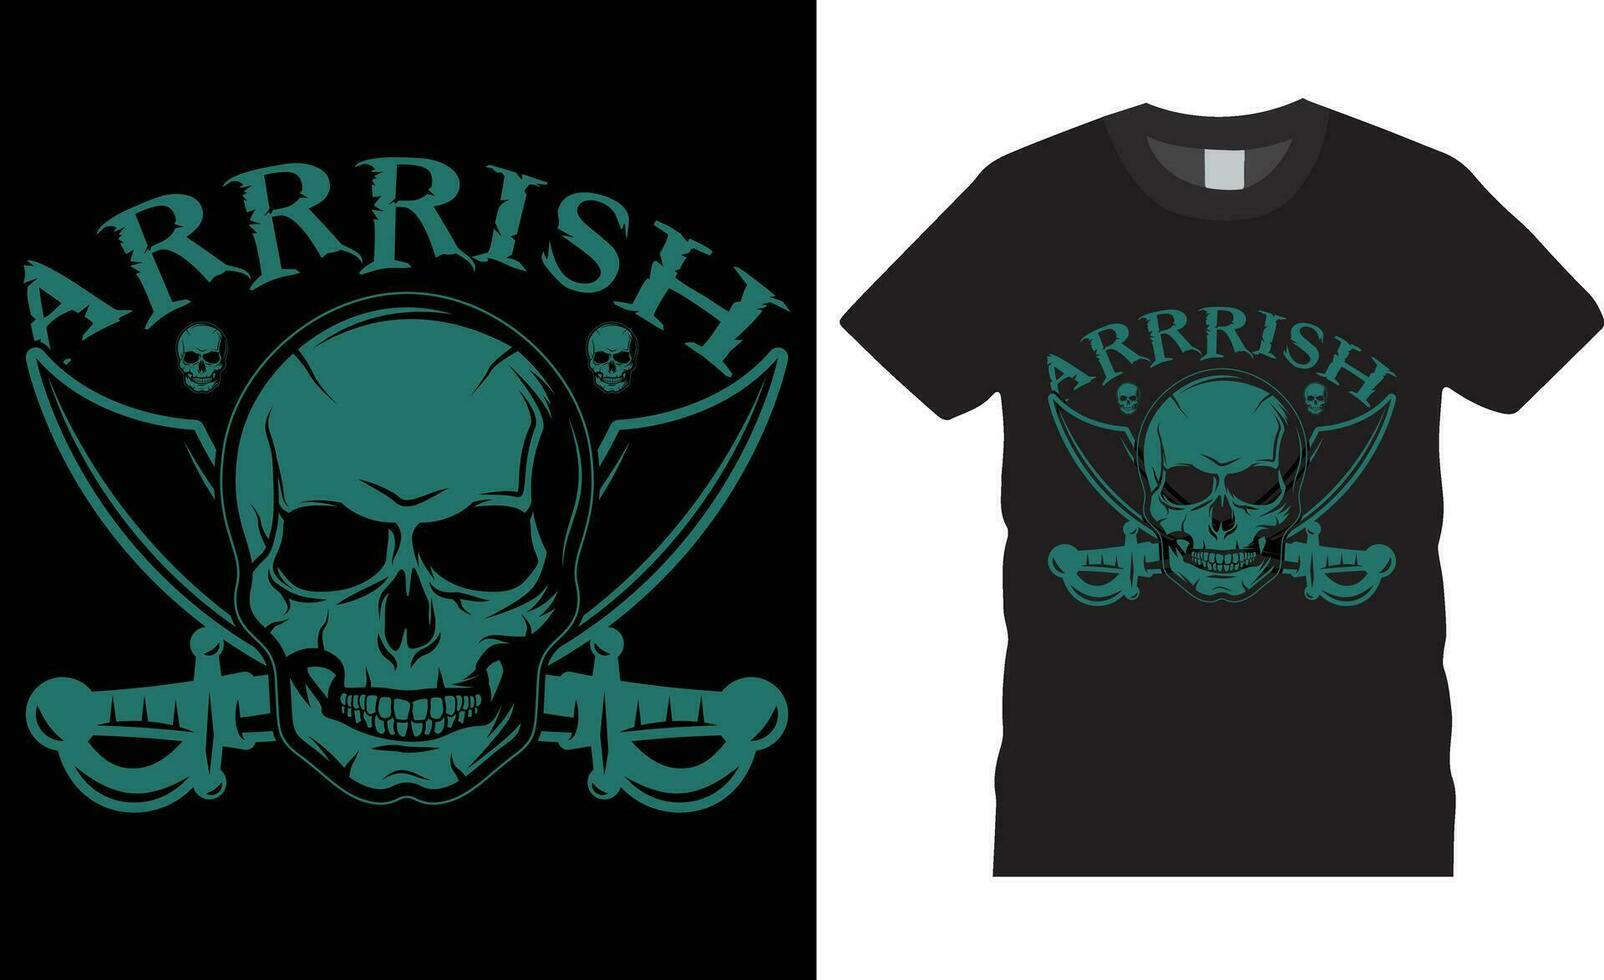 sich unterhalten mögen ein Pirat Tag Typografie t Hemd Design Vektor drucken zum t Shirt.arrrish